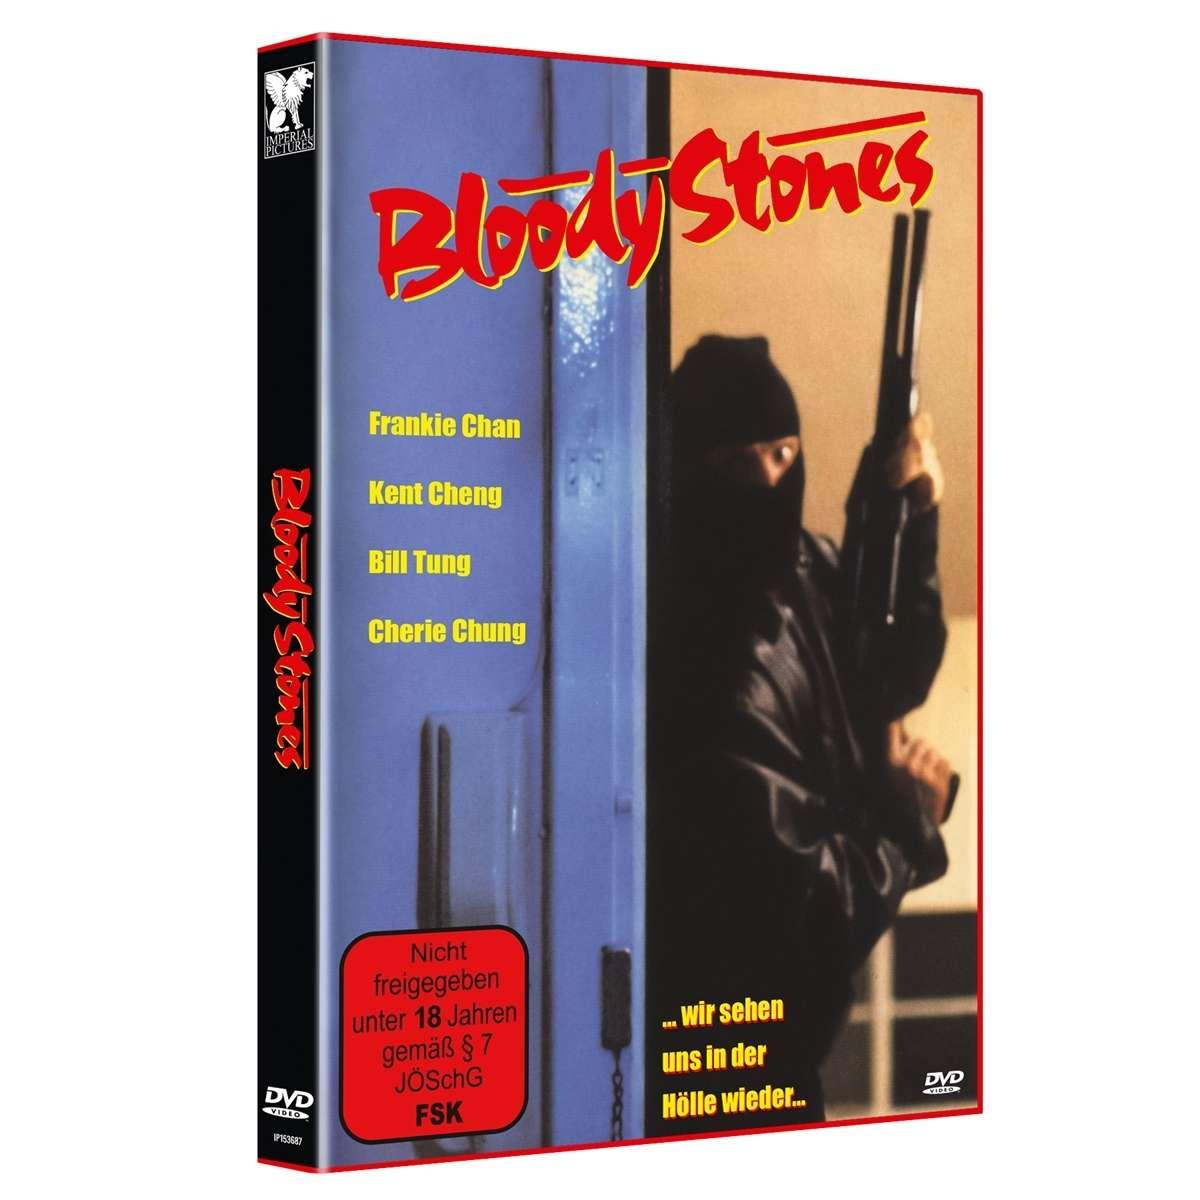 Bloody Stones-Wir sehen uns DVD Hölle der in wieder